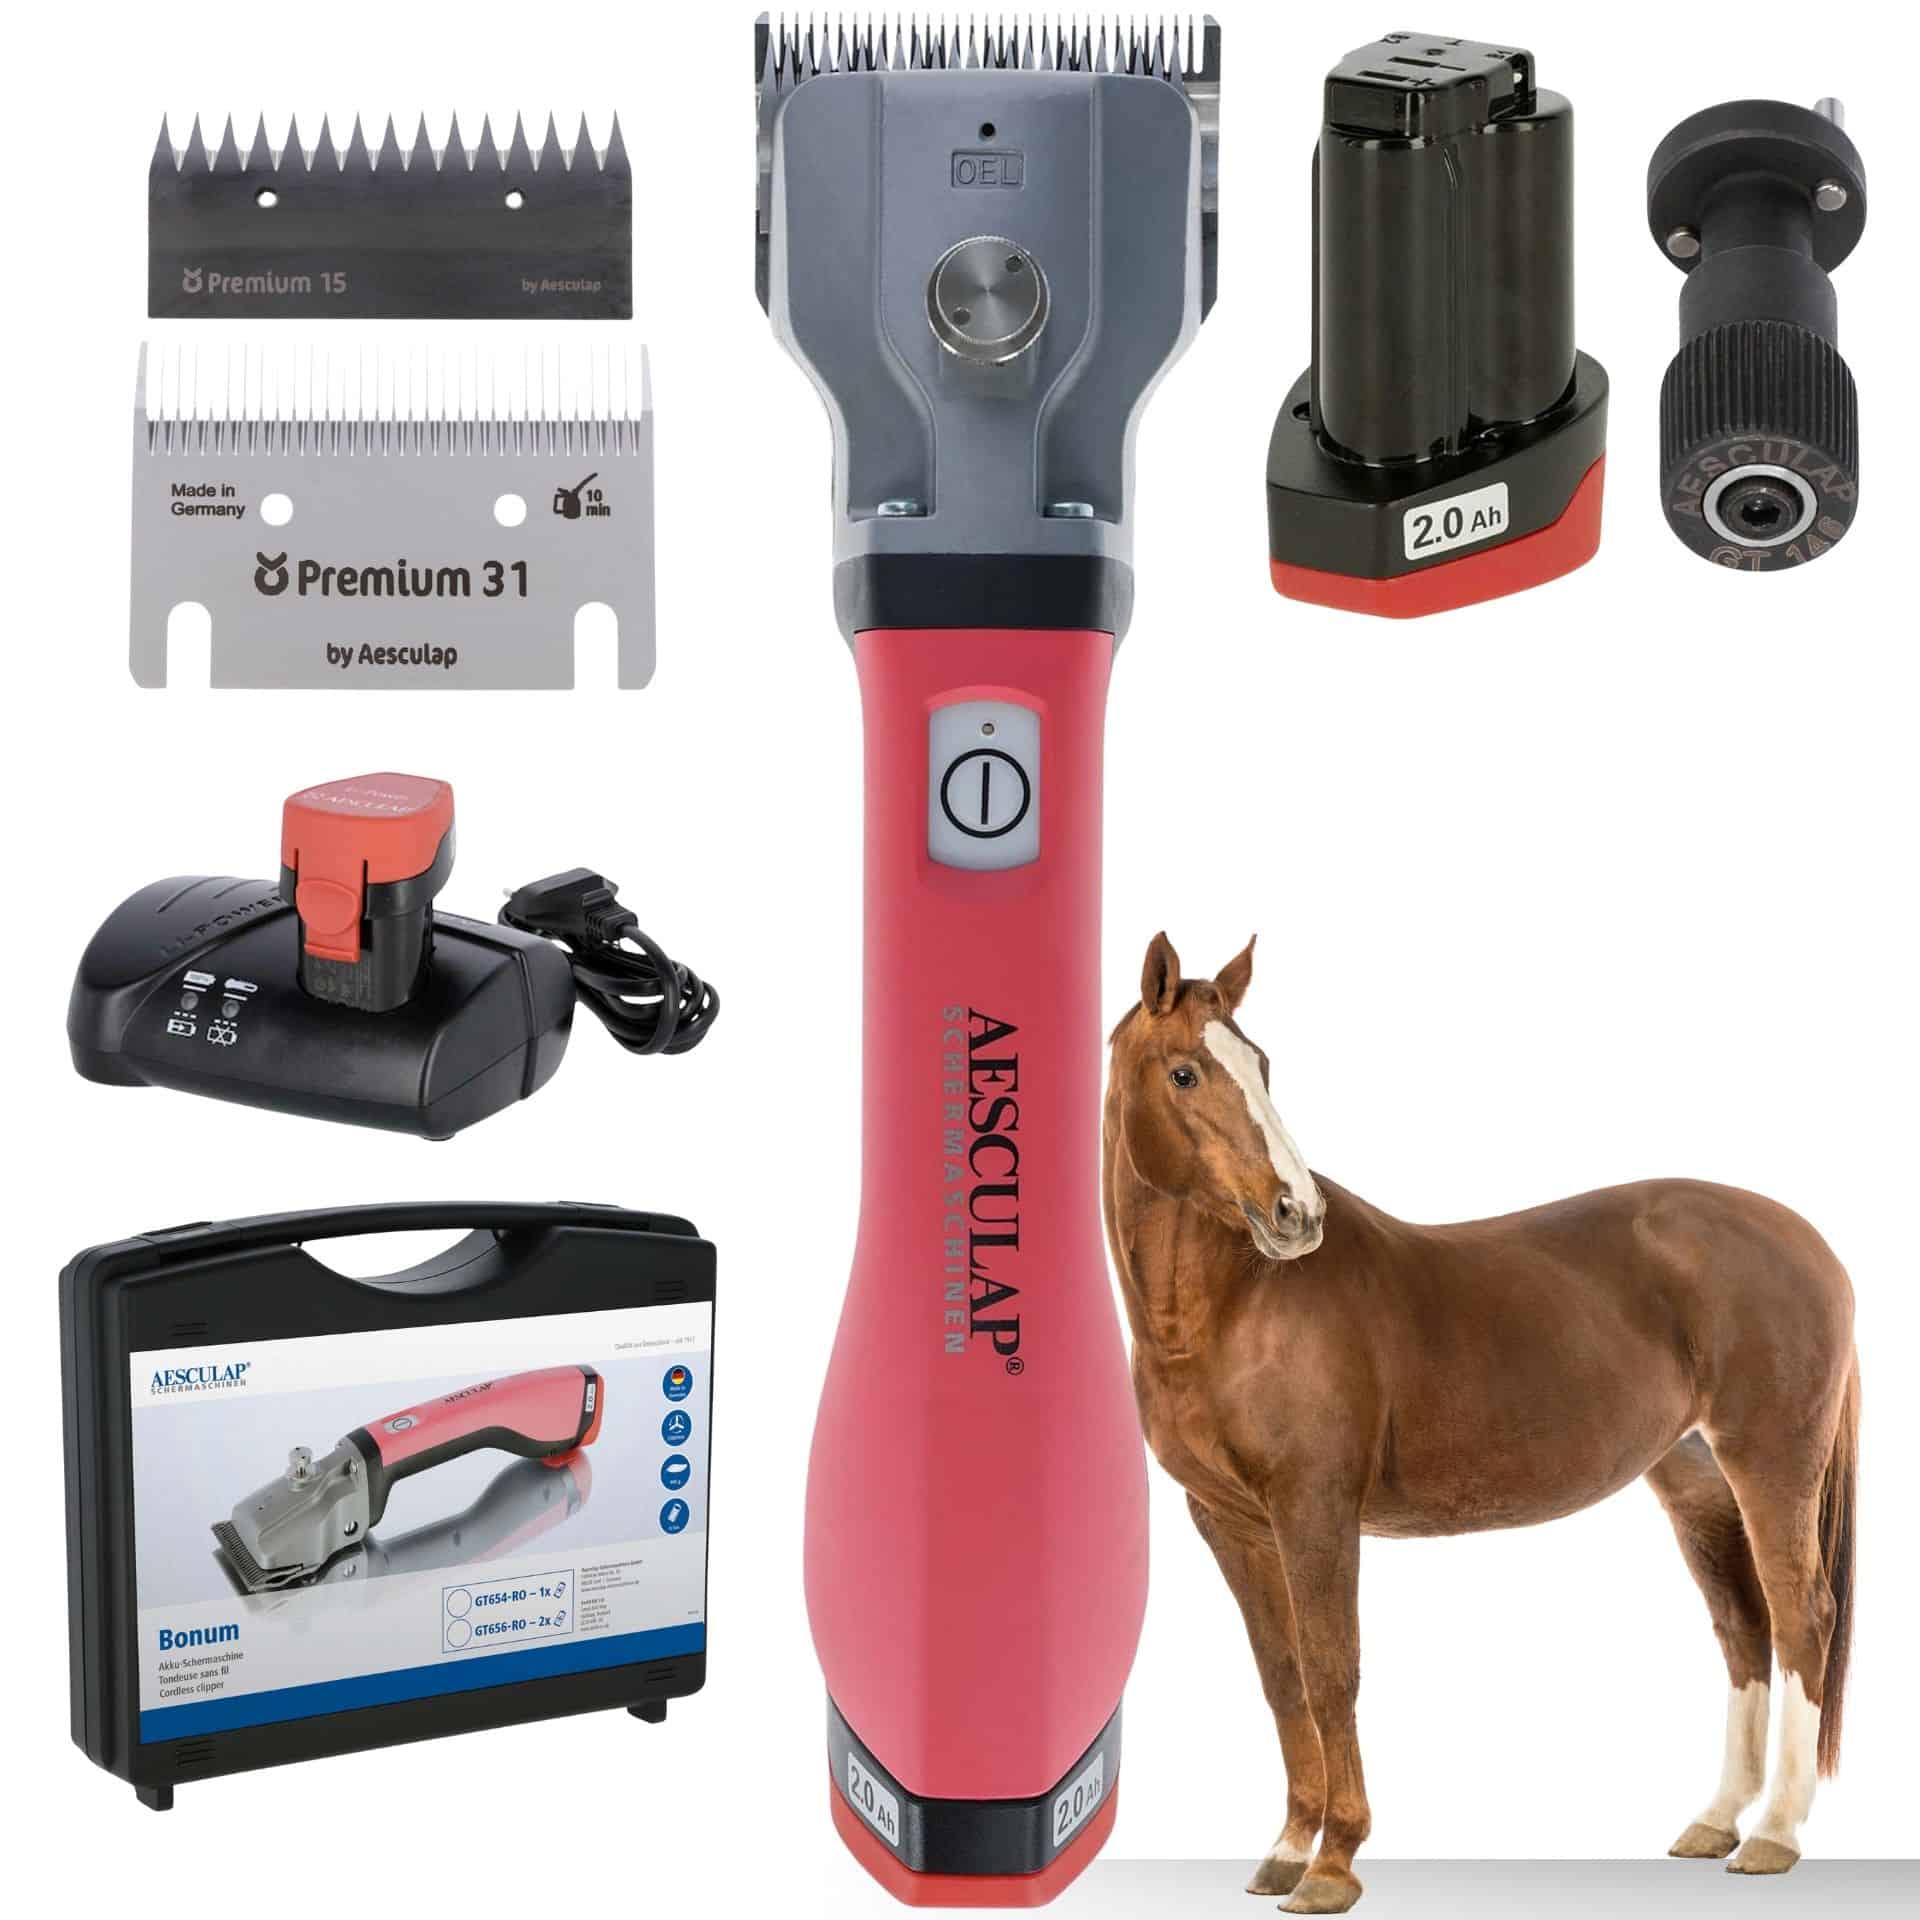 Aesculap batteri-klippmaskin hästar rosa 1x batteri + GRATIS justeringshjälpmedel